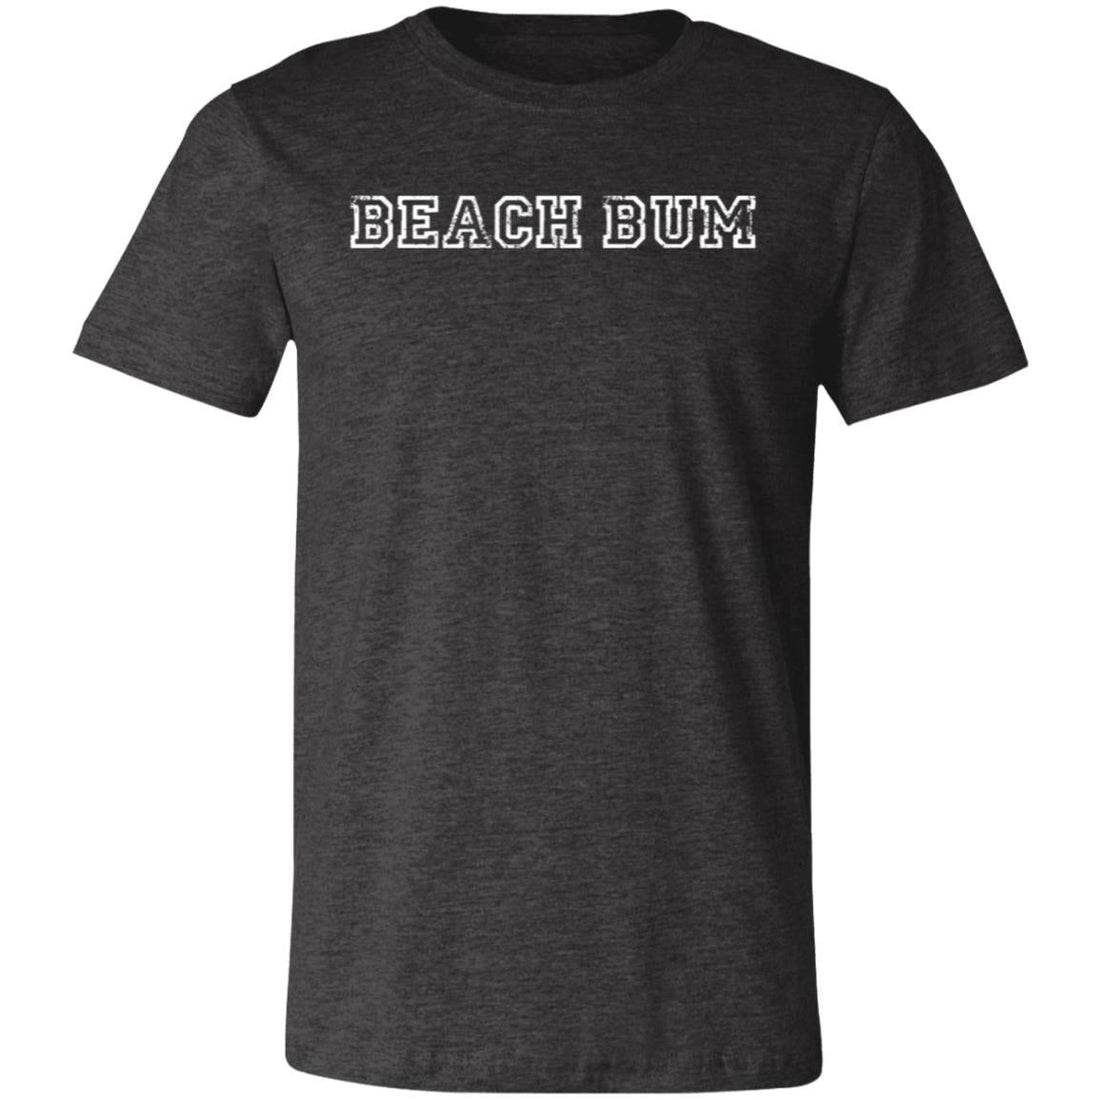 Beach Bum T-Shirt - T-Shirts - Positively Sassy - Beach Bum T-Shirt